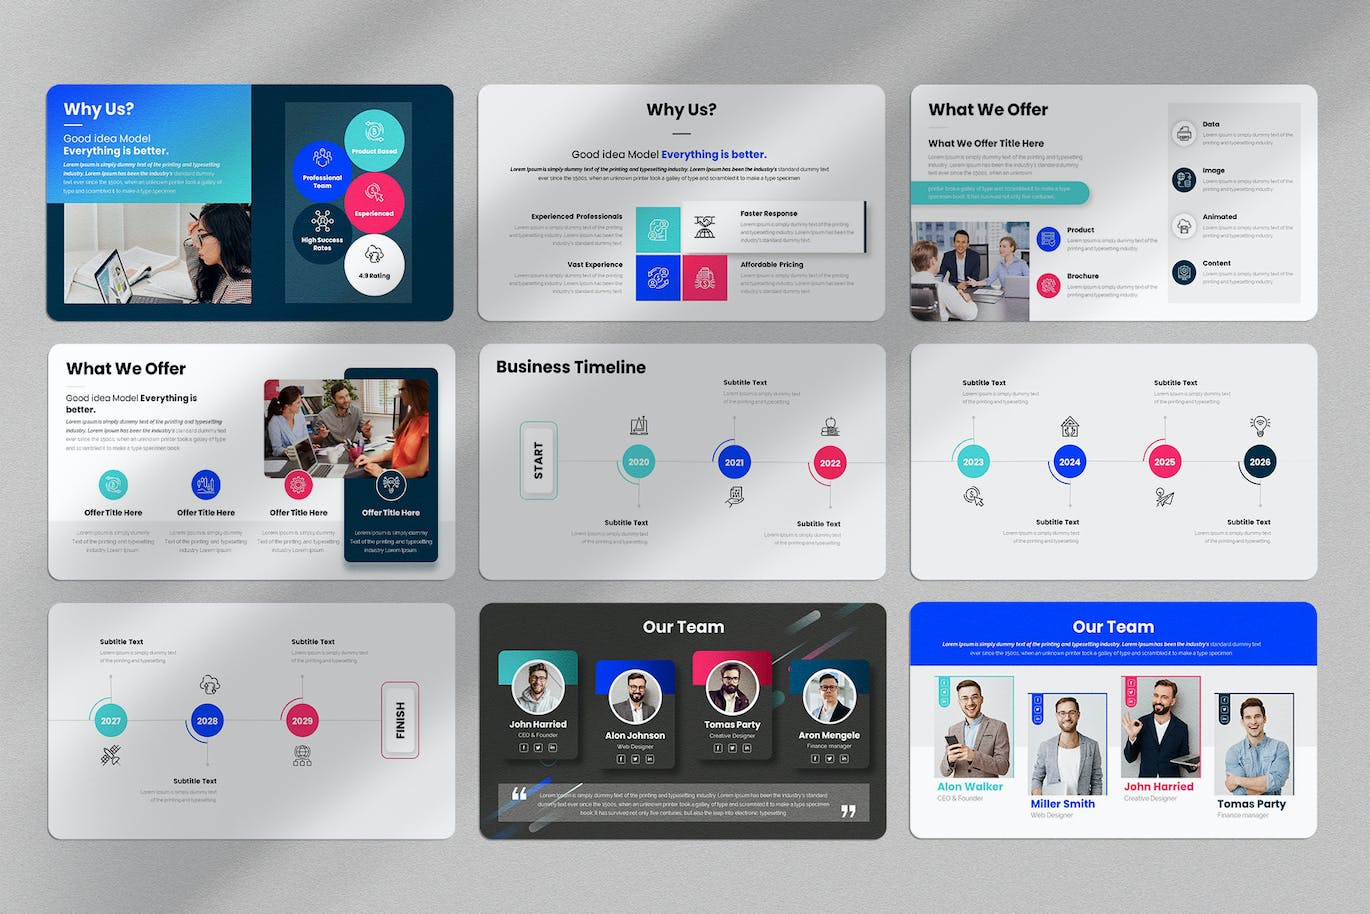 商业计划方案谷歌幻灯片演示文稿模板 Business Plan Google Slides Presentation Template 幻灯图表 第2张